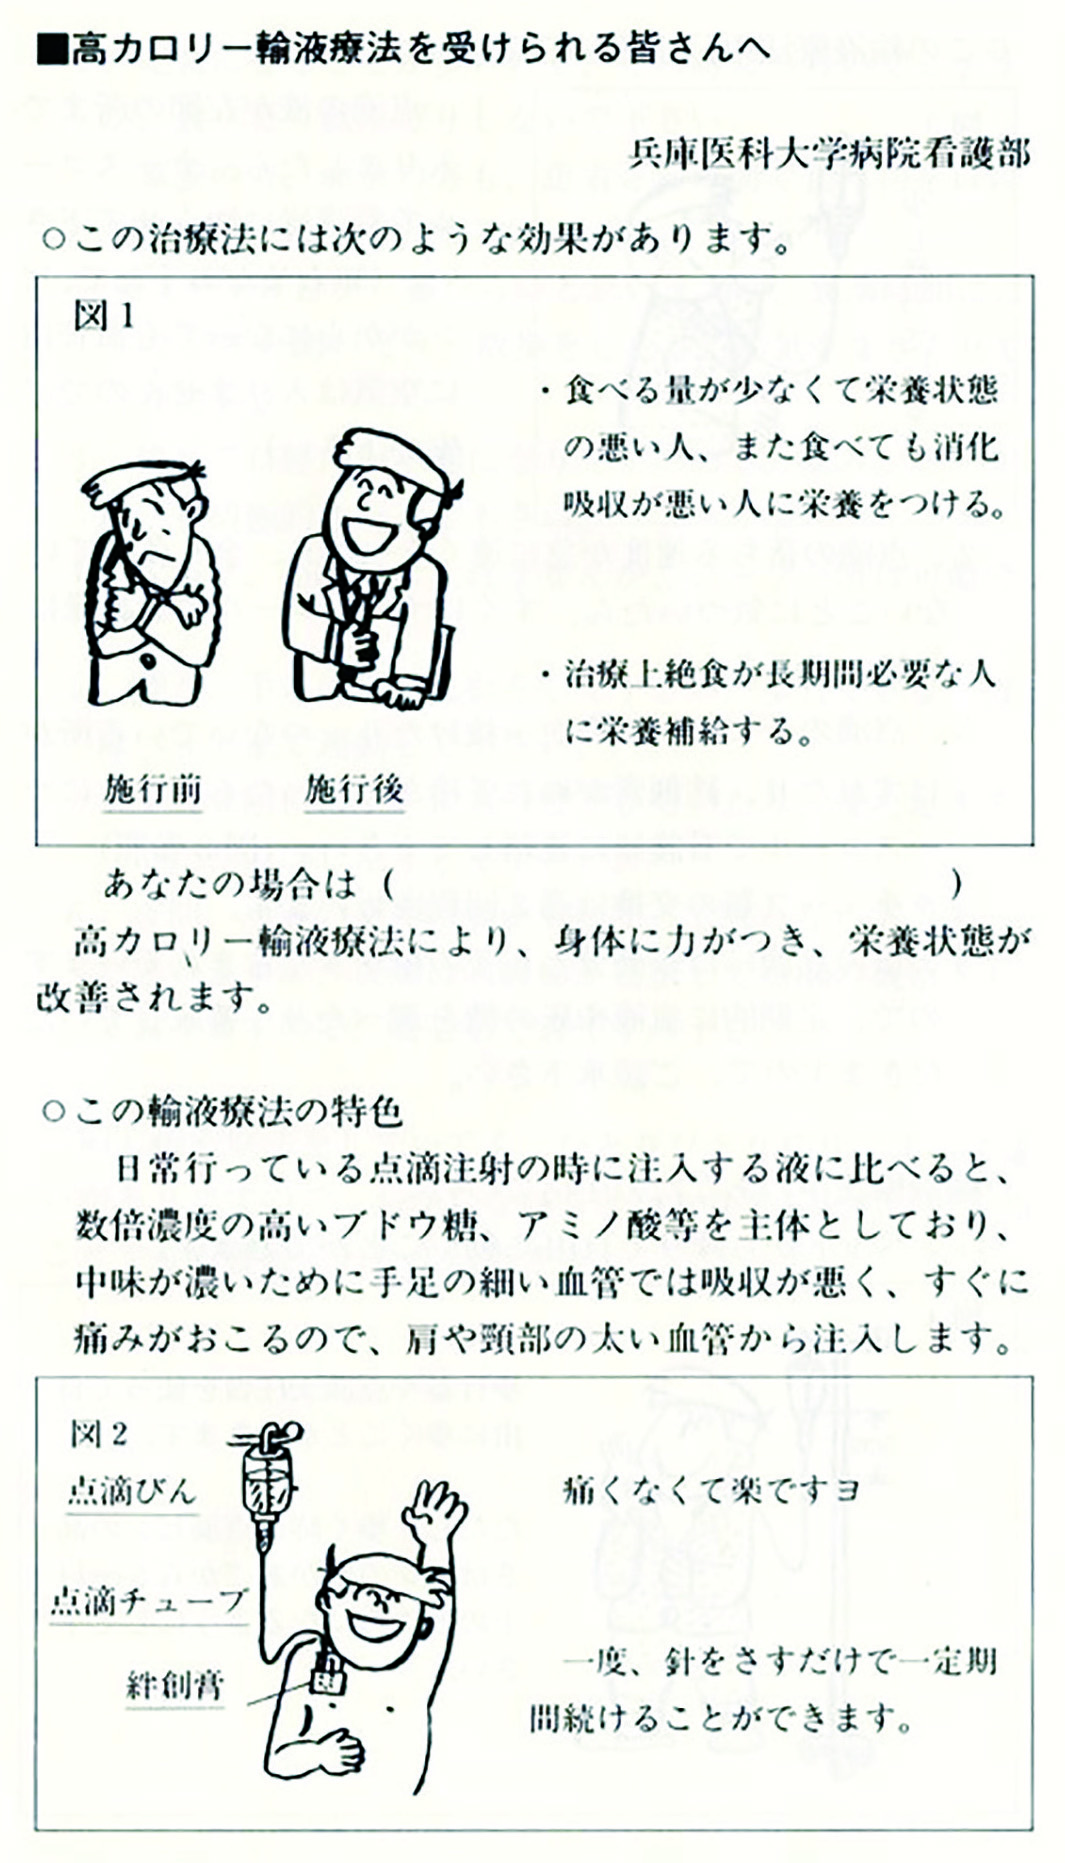 大阪大学第一外科で作成した『高カロリー輸液の手引き（1988年発行）』に掲載された『X.TPN看護』